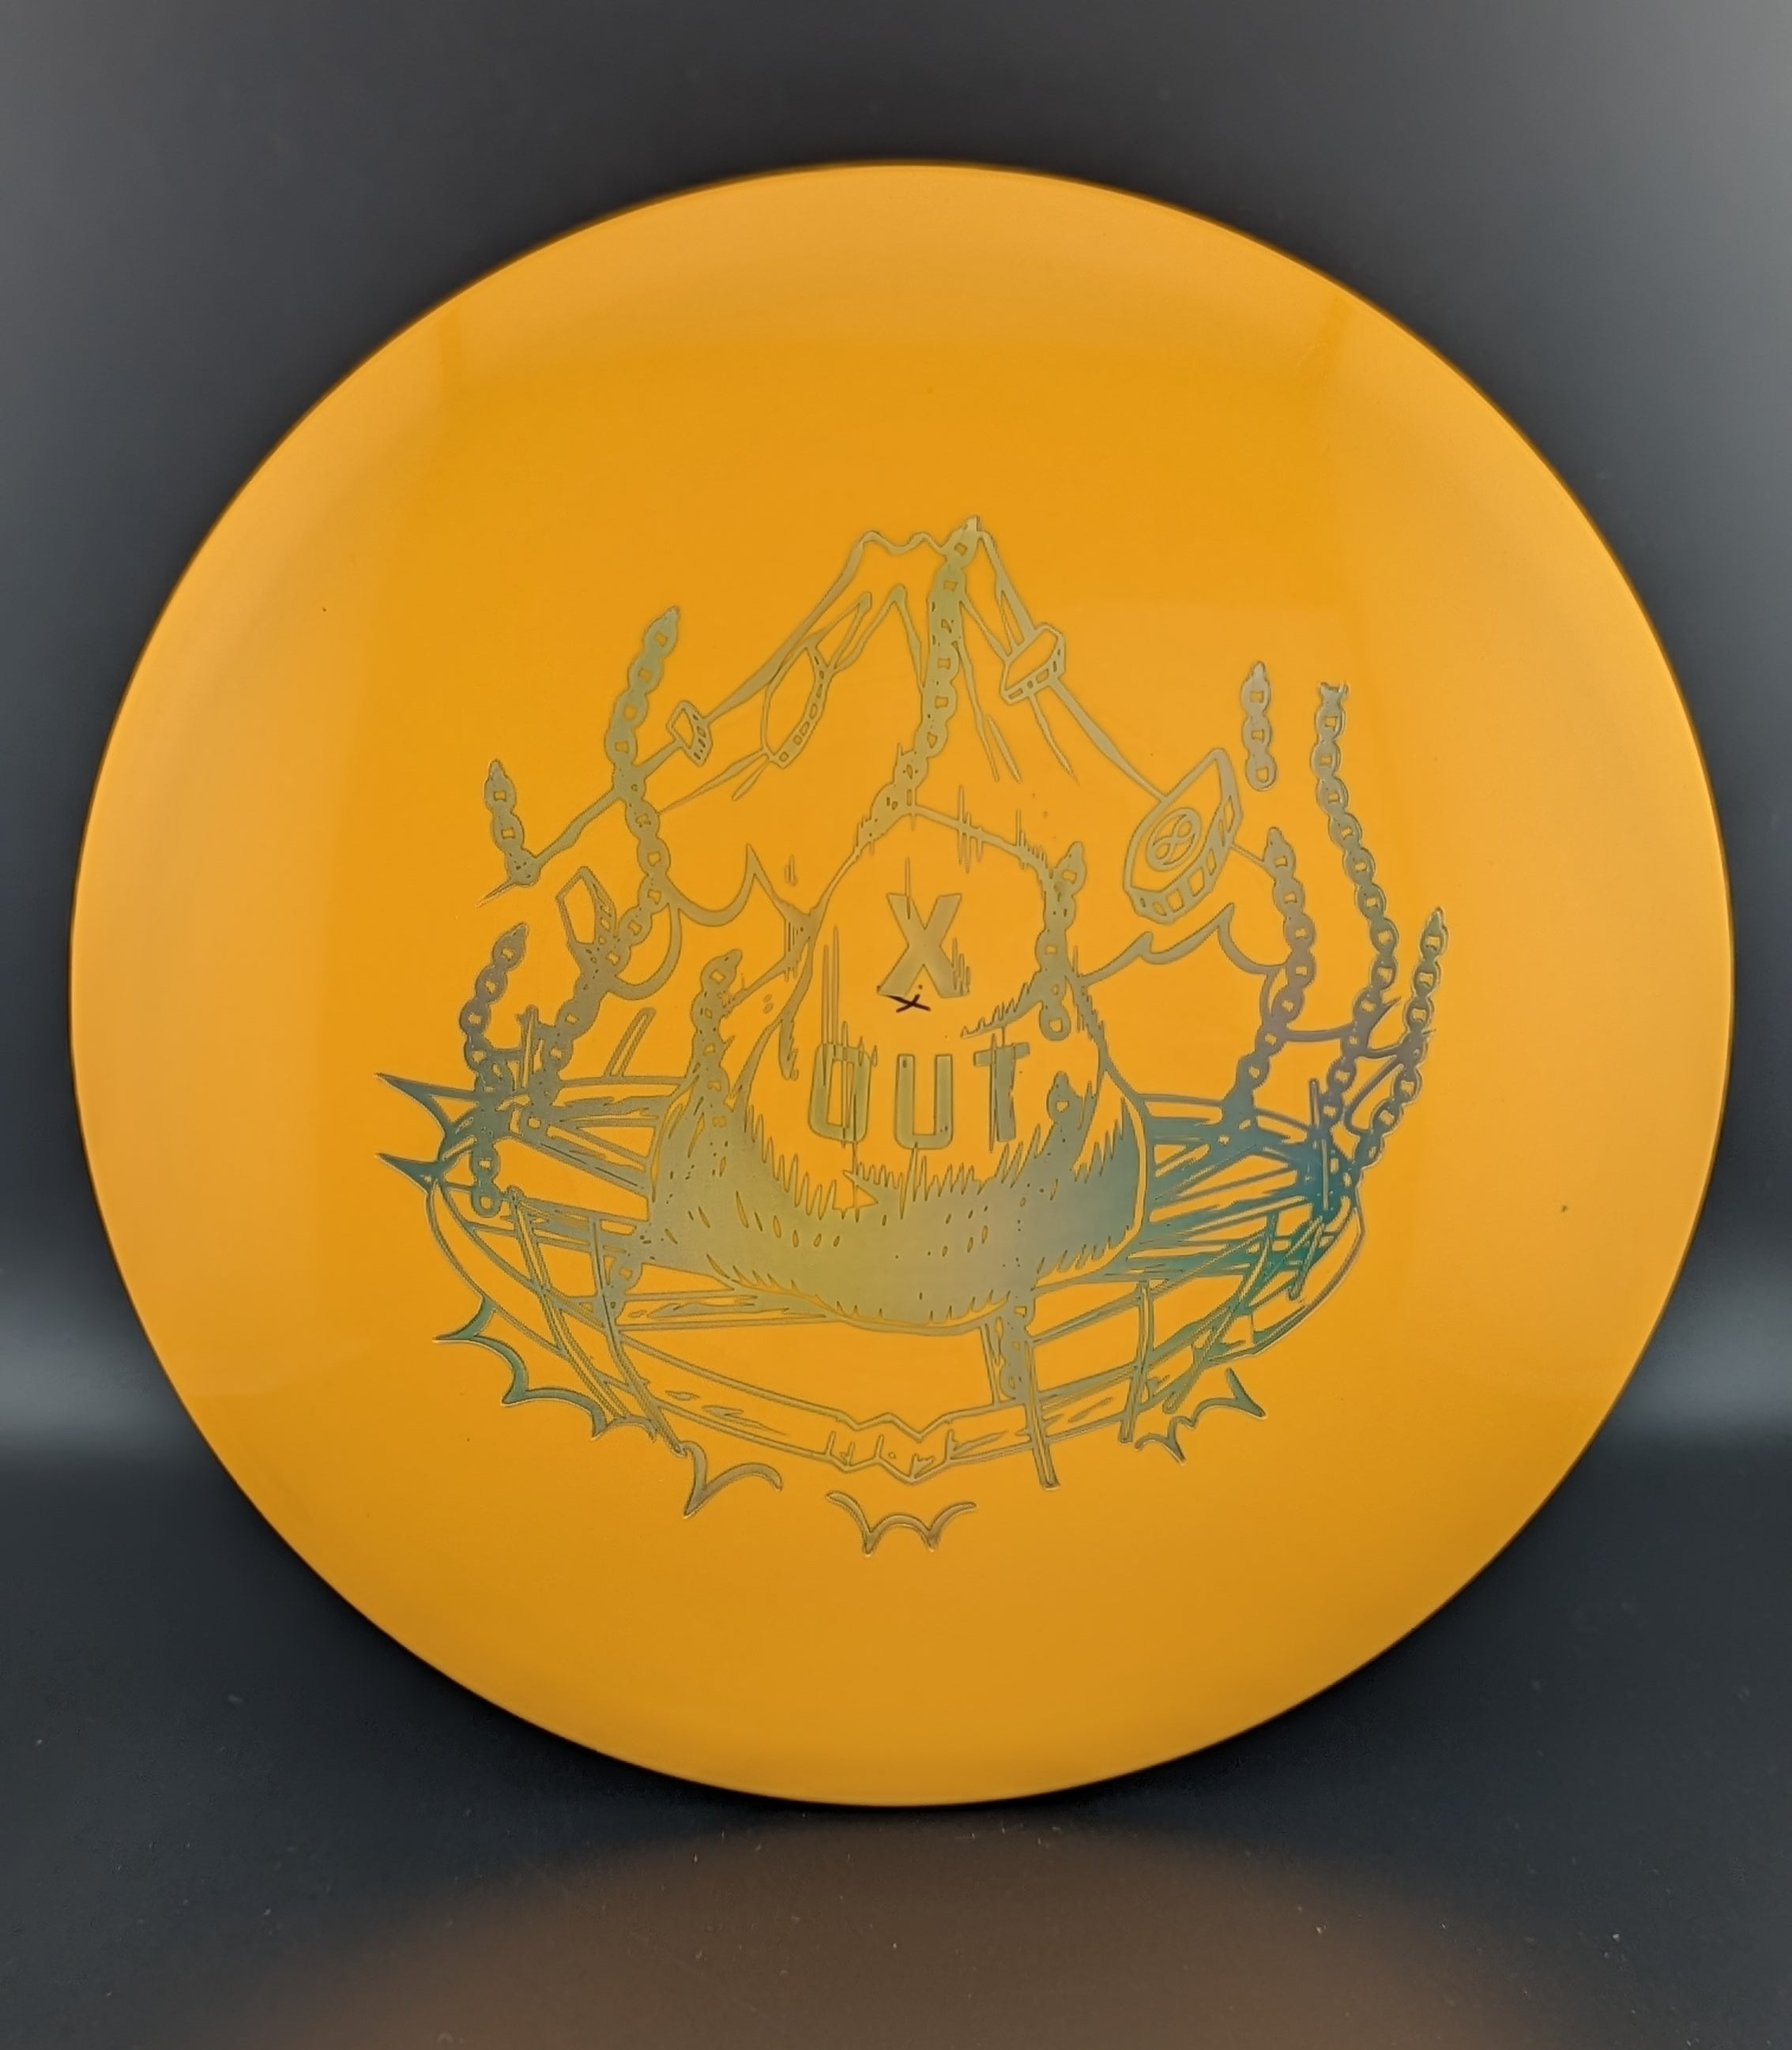 2. Light Orange | Holographic Foil | 170g